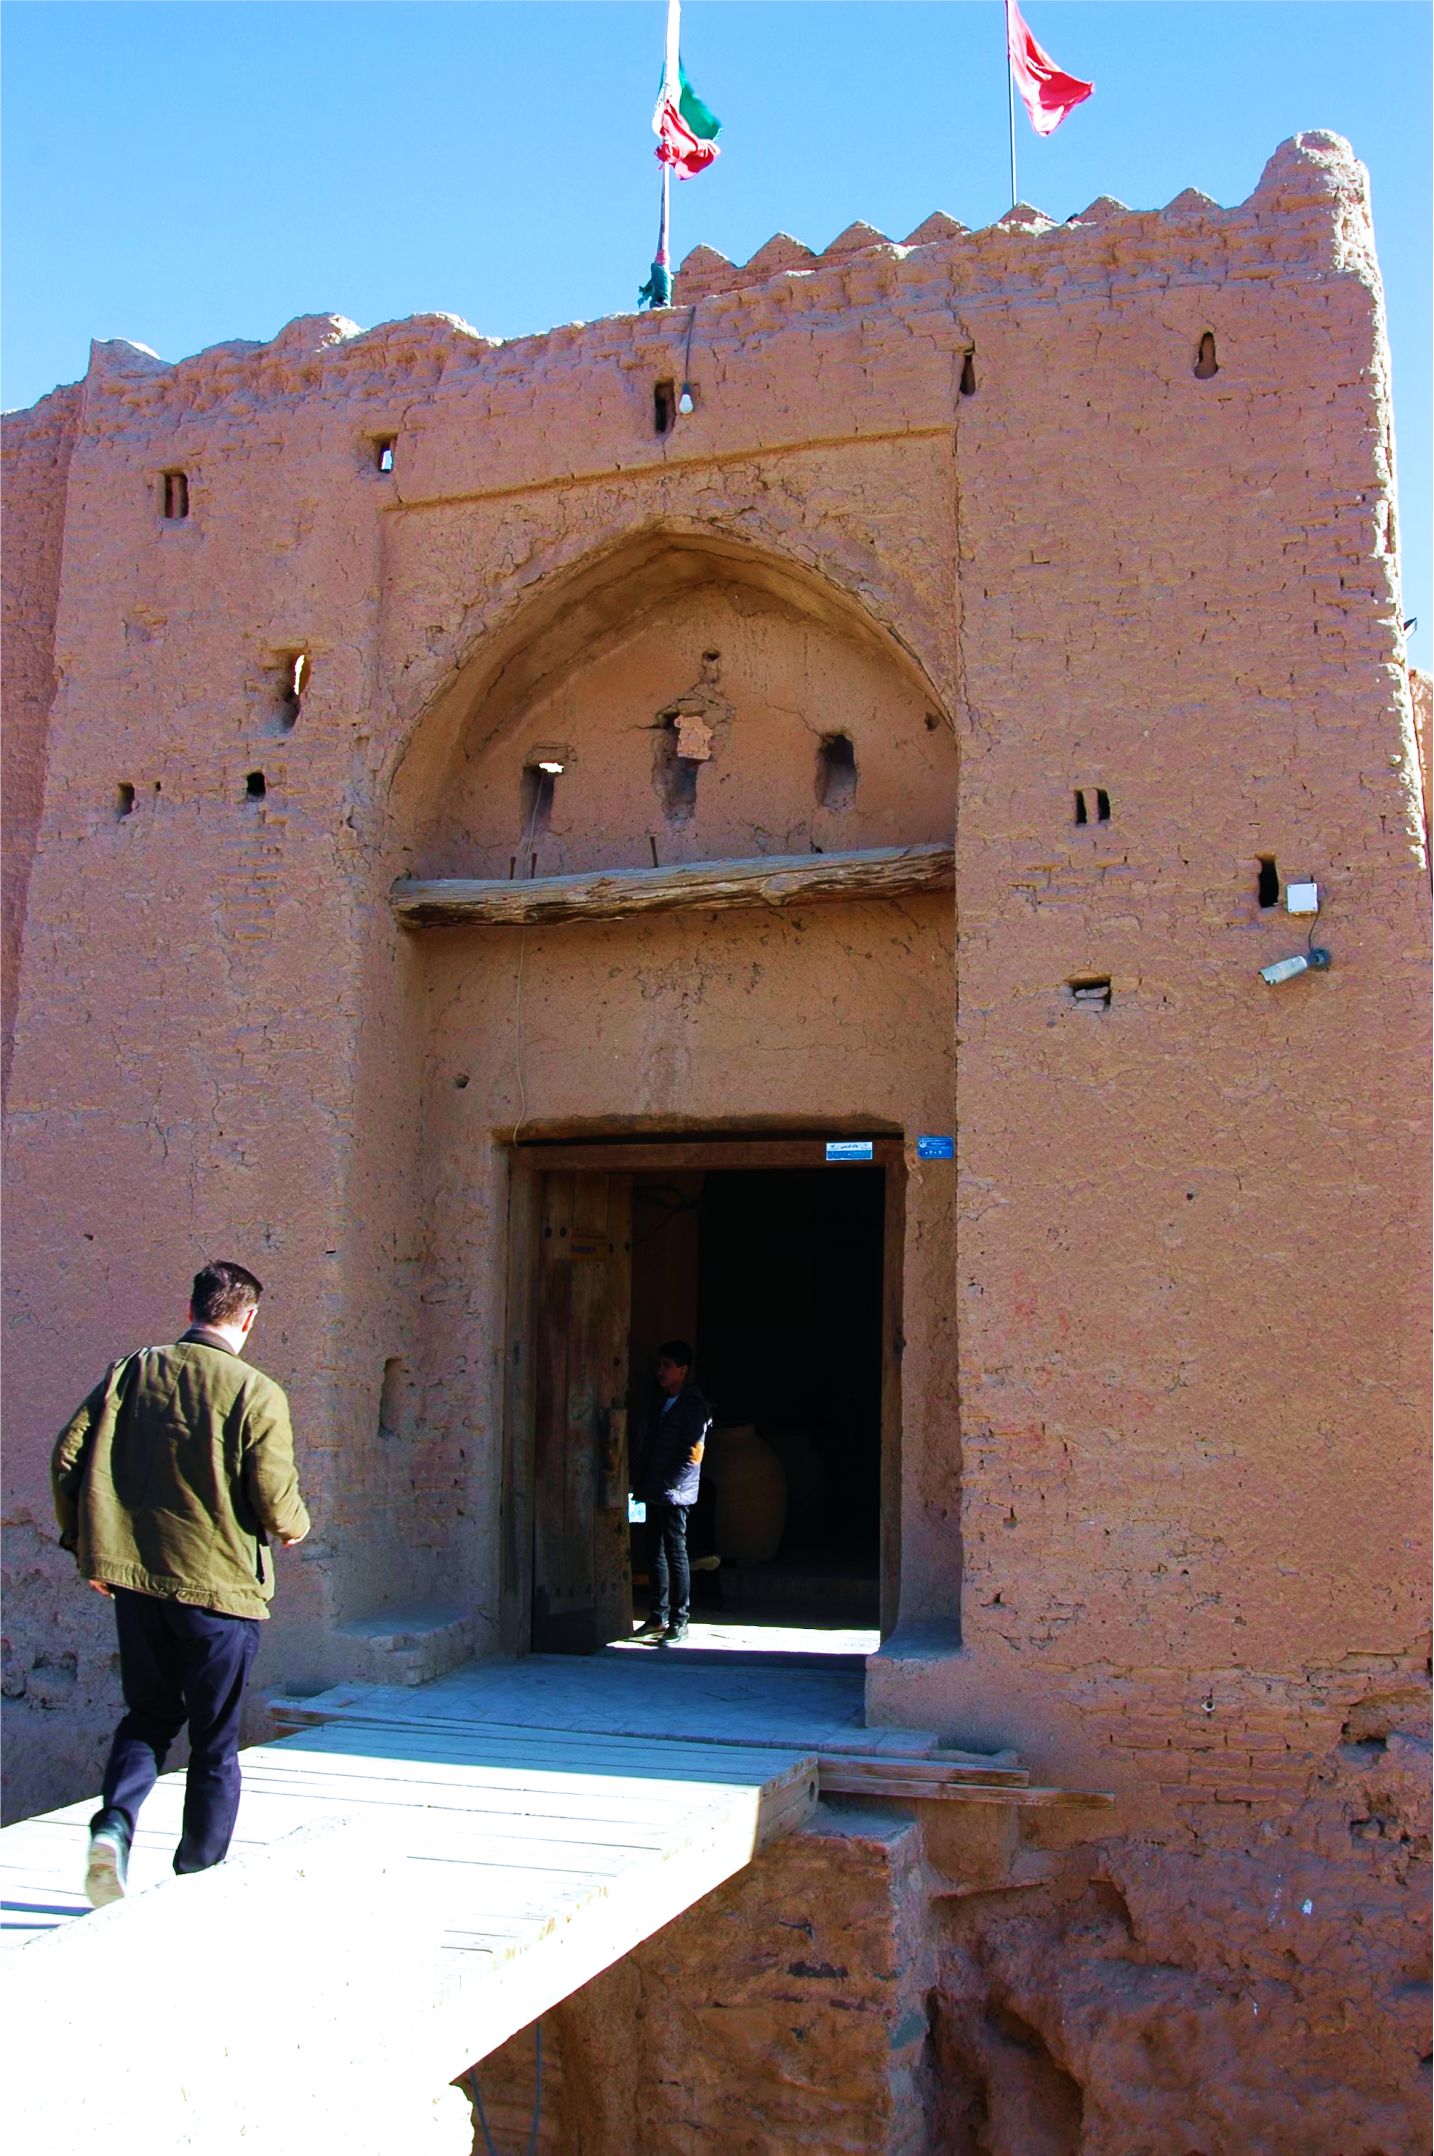  Tháp đón gió - tuyệt tác kiến trúc của thành phố sa mạc Yazd  - Ảnh 14.